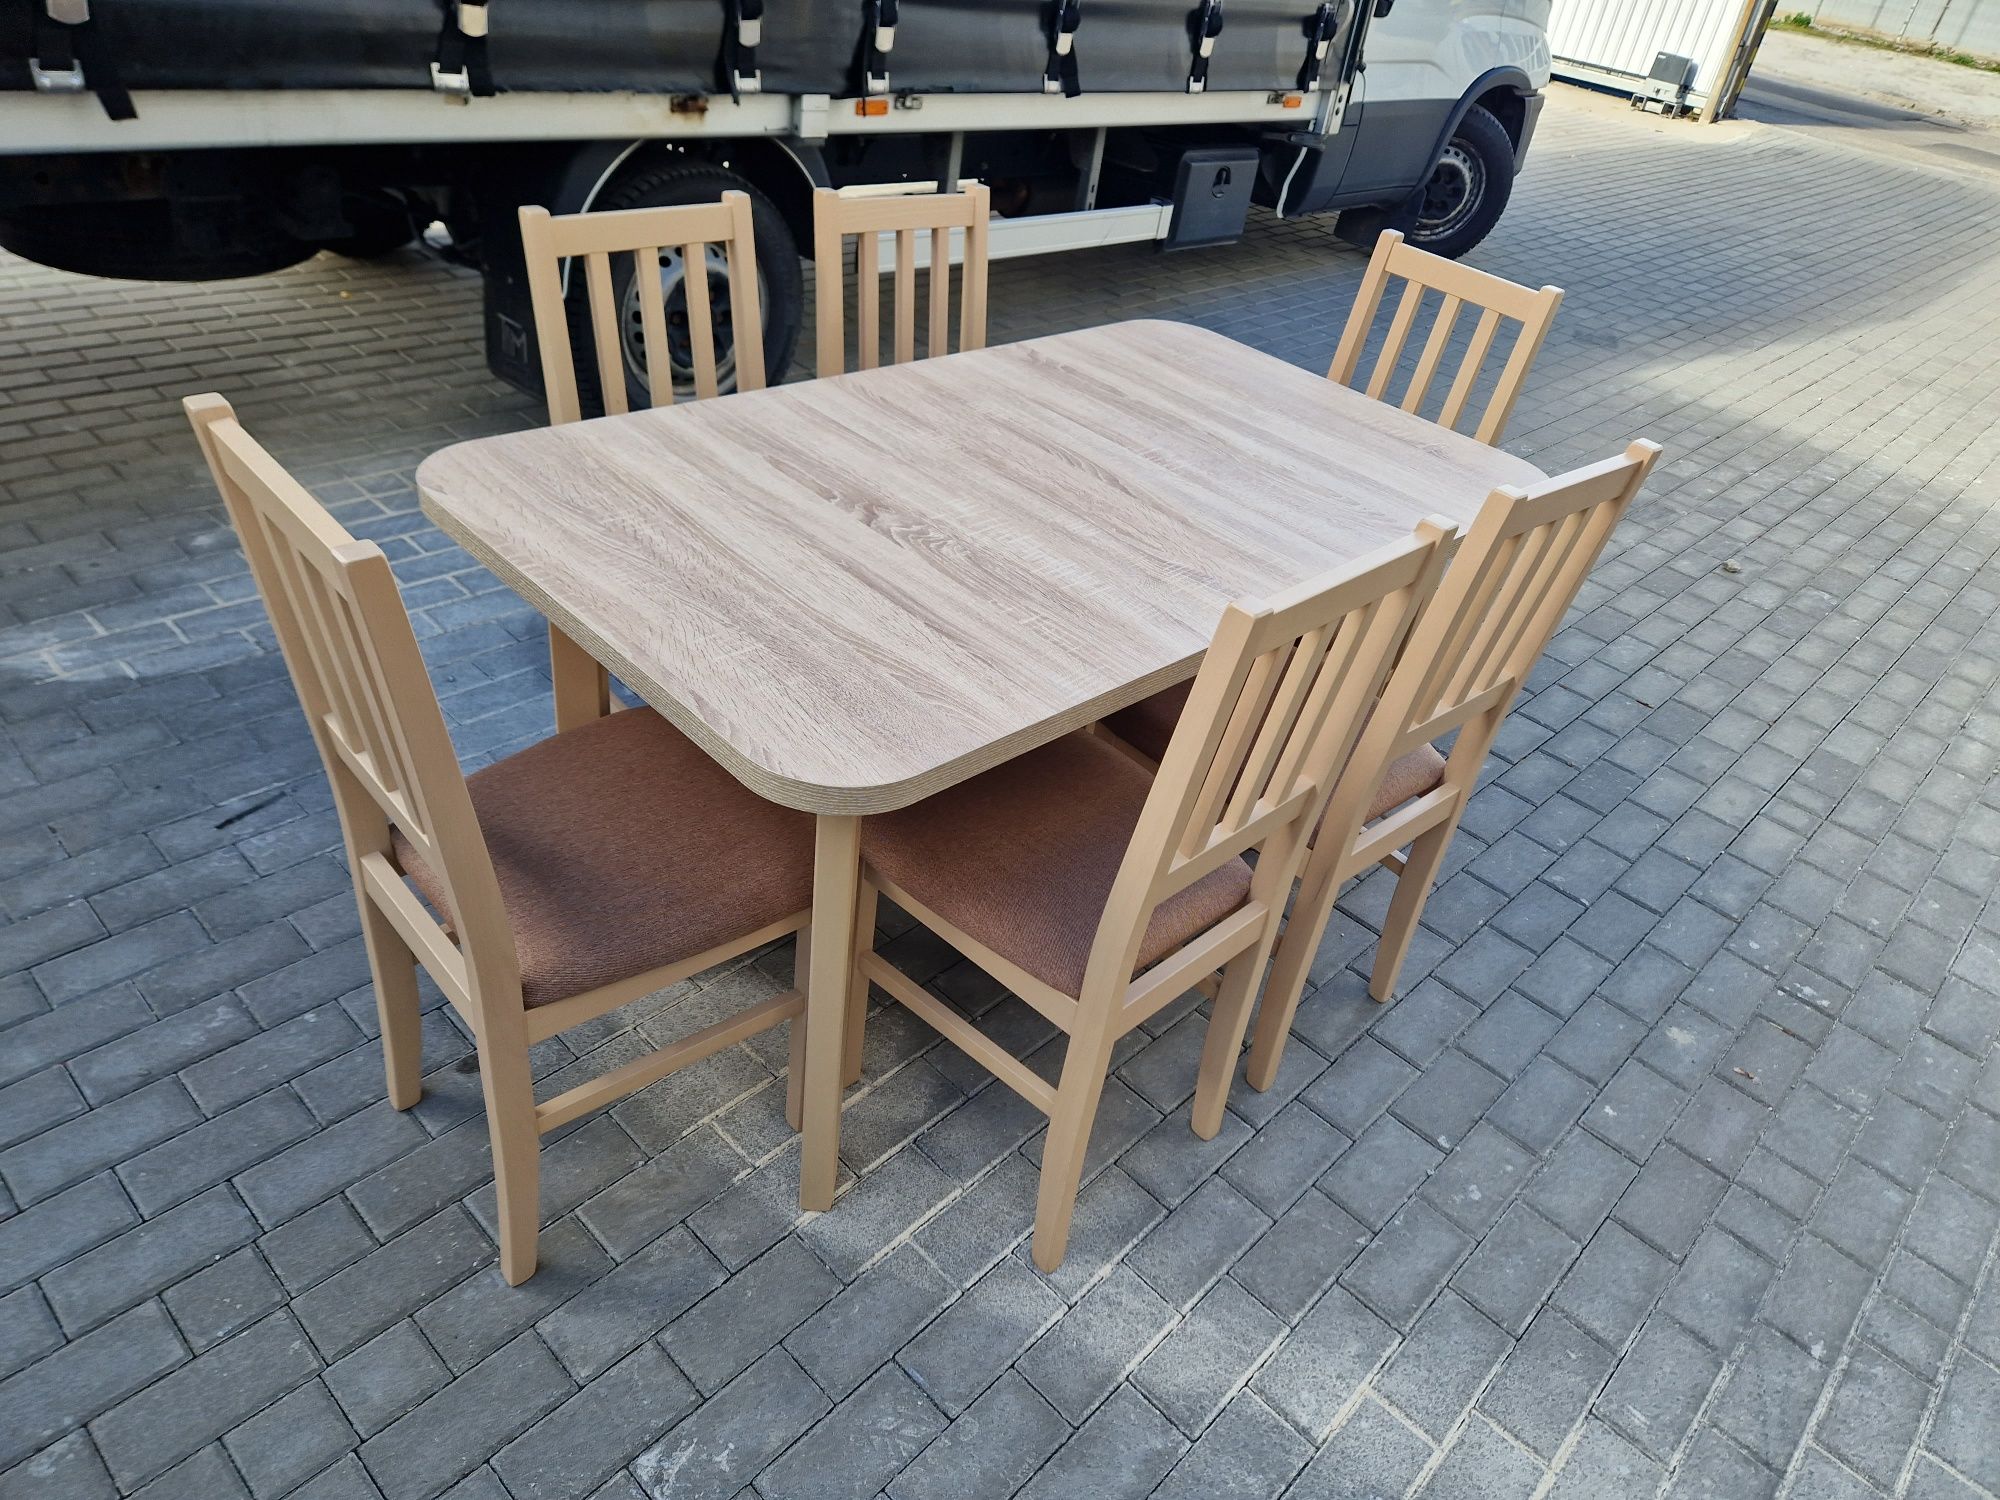 Nowe: Stół 80x140/180 + 6 krzeseł, sonoma + jasny brąz ( szczebelki)